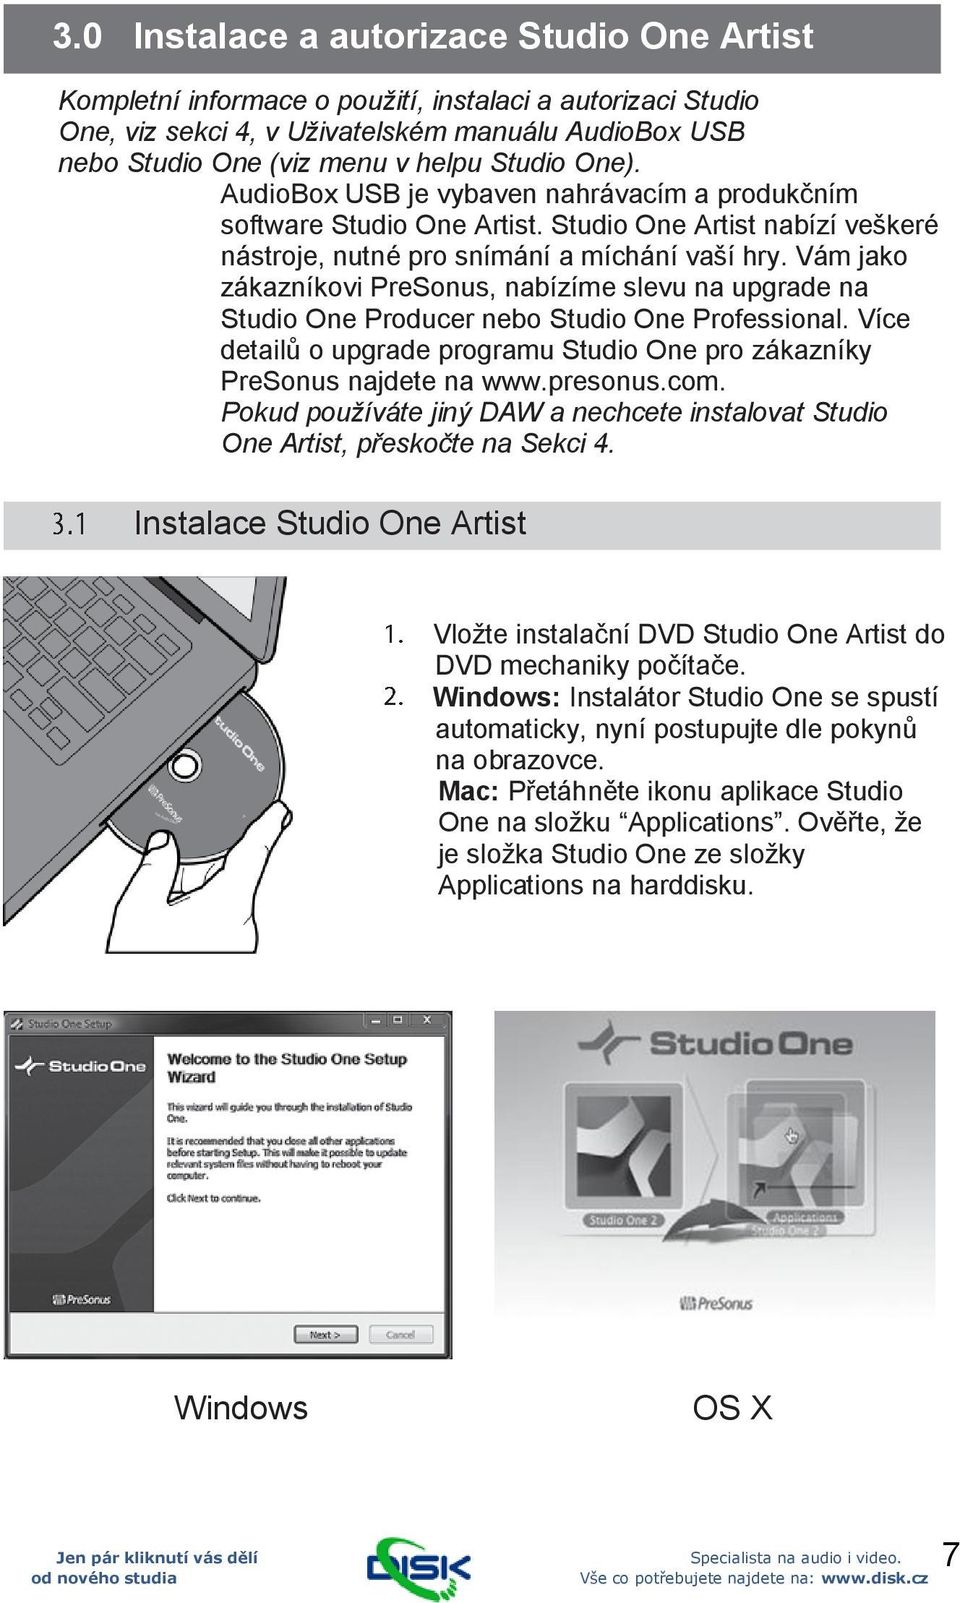 Vám jako zákazníkovi PreSonus, nabízíme slevu na upgrade na Studio One Producer nebo Studio One Professional. Více detailů o upgrade programu Studio One pro zákazníky PreSonus najdete na www.presonus.